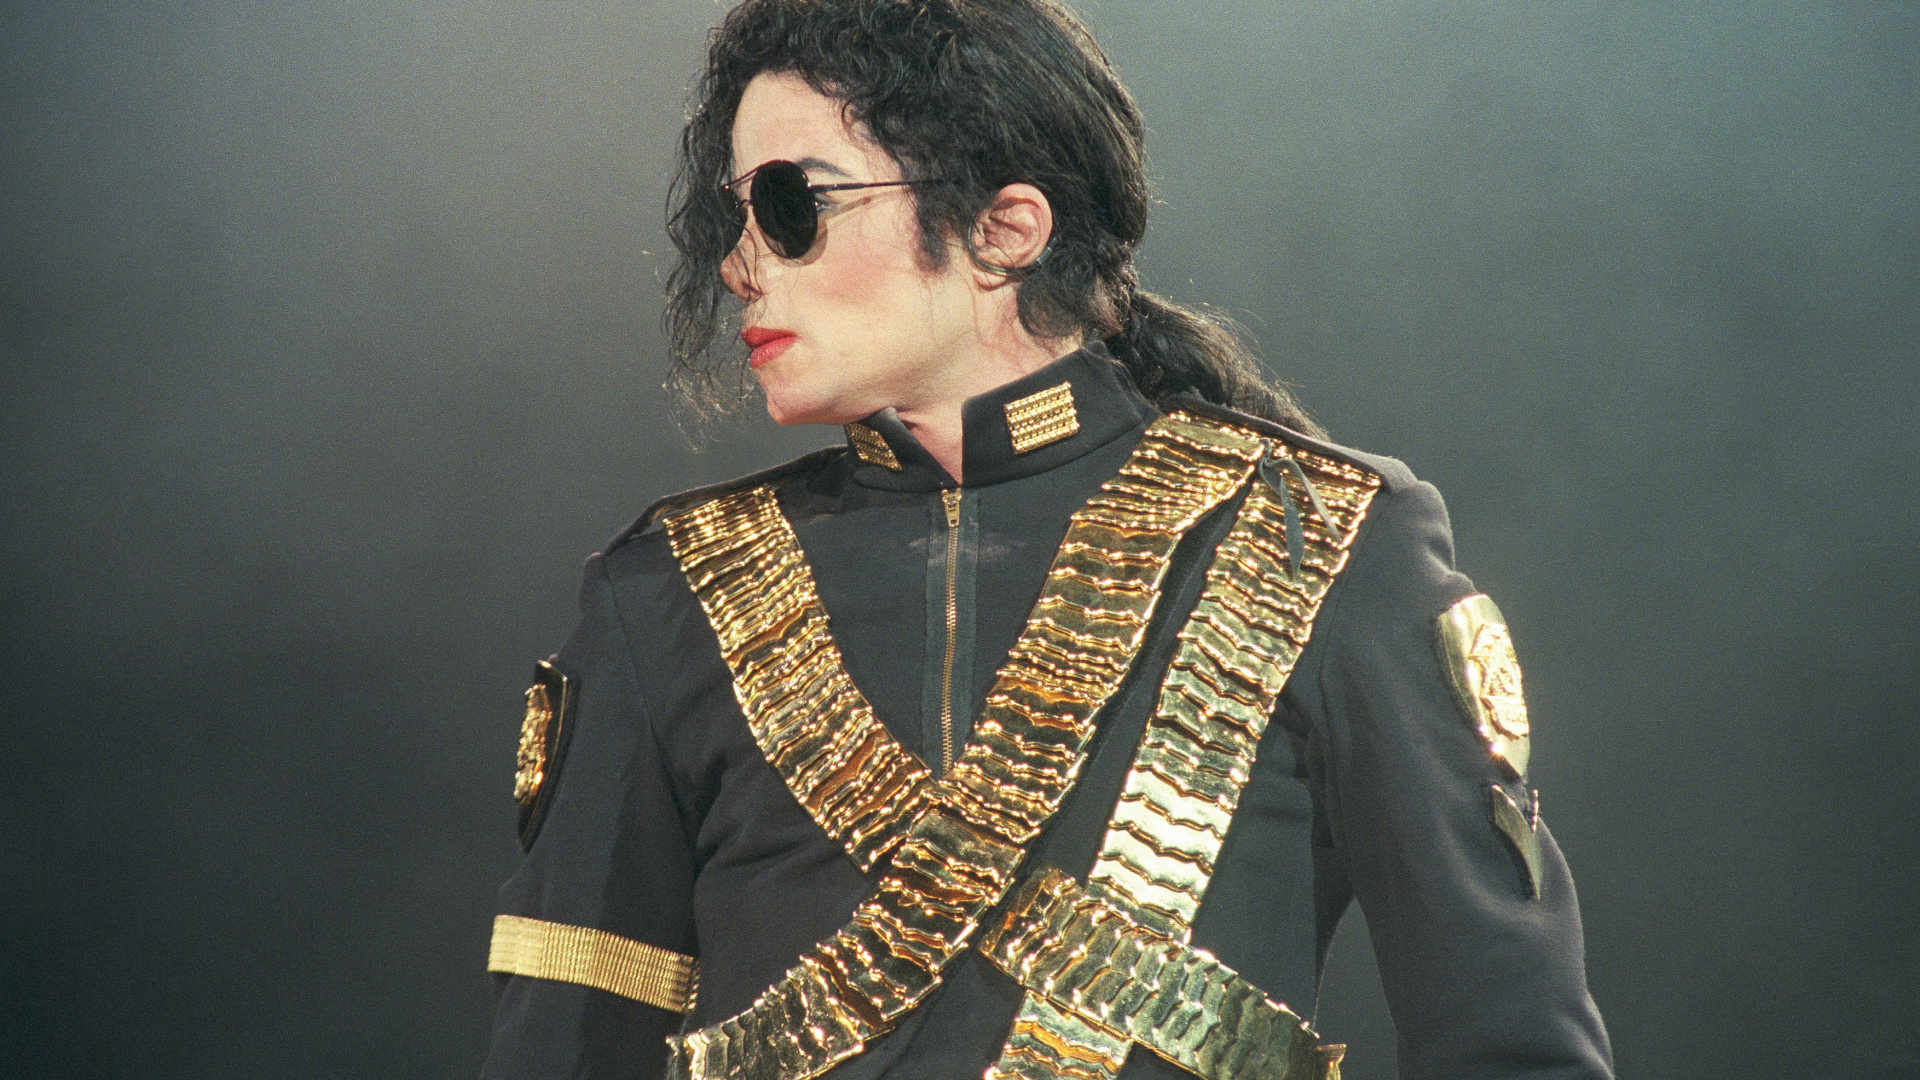 迈克尔*杰克逊, 死的迈克尔*杰克逊, 音乐家, 时尚的设计, 性能 壁纸 1920x1080 允许